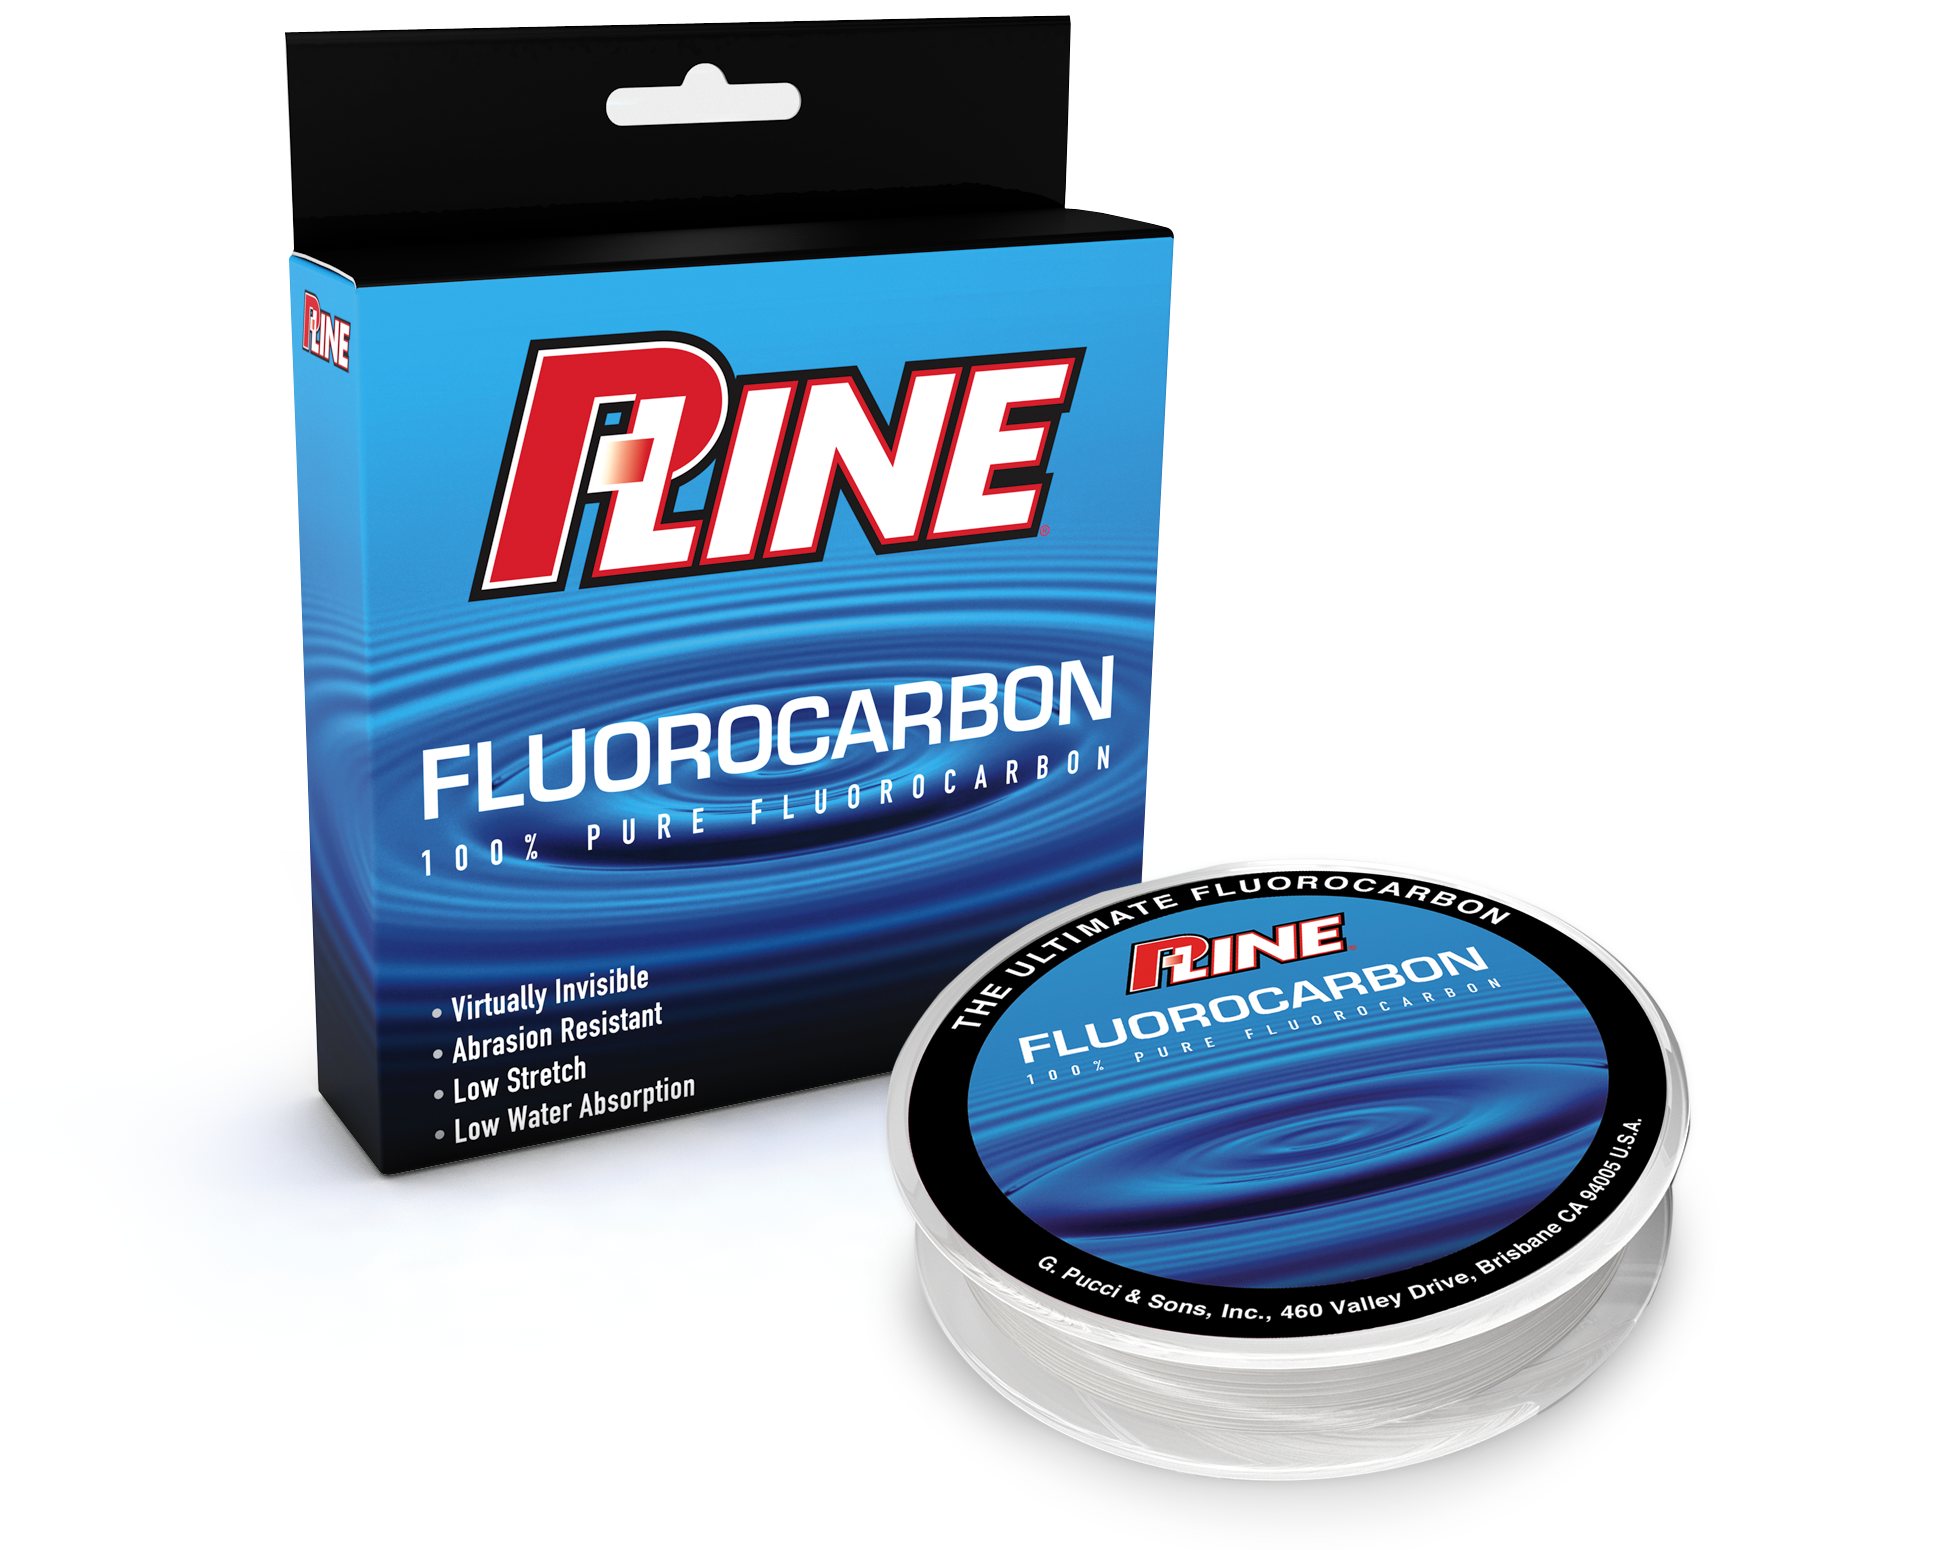 P-Line Fluorocarbon 17lb 250yds Reg. $49.99